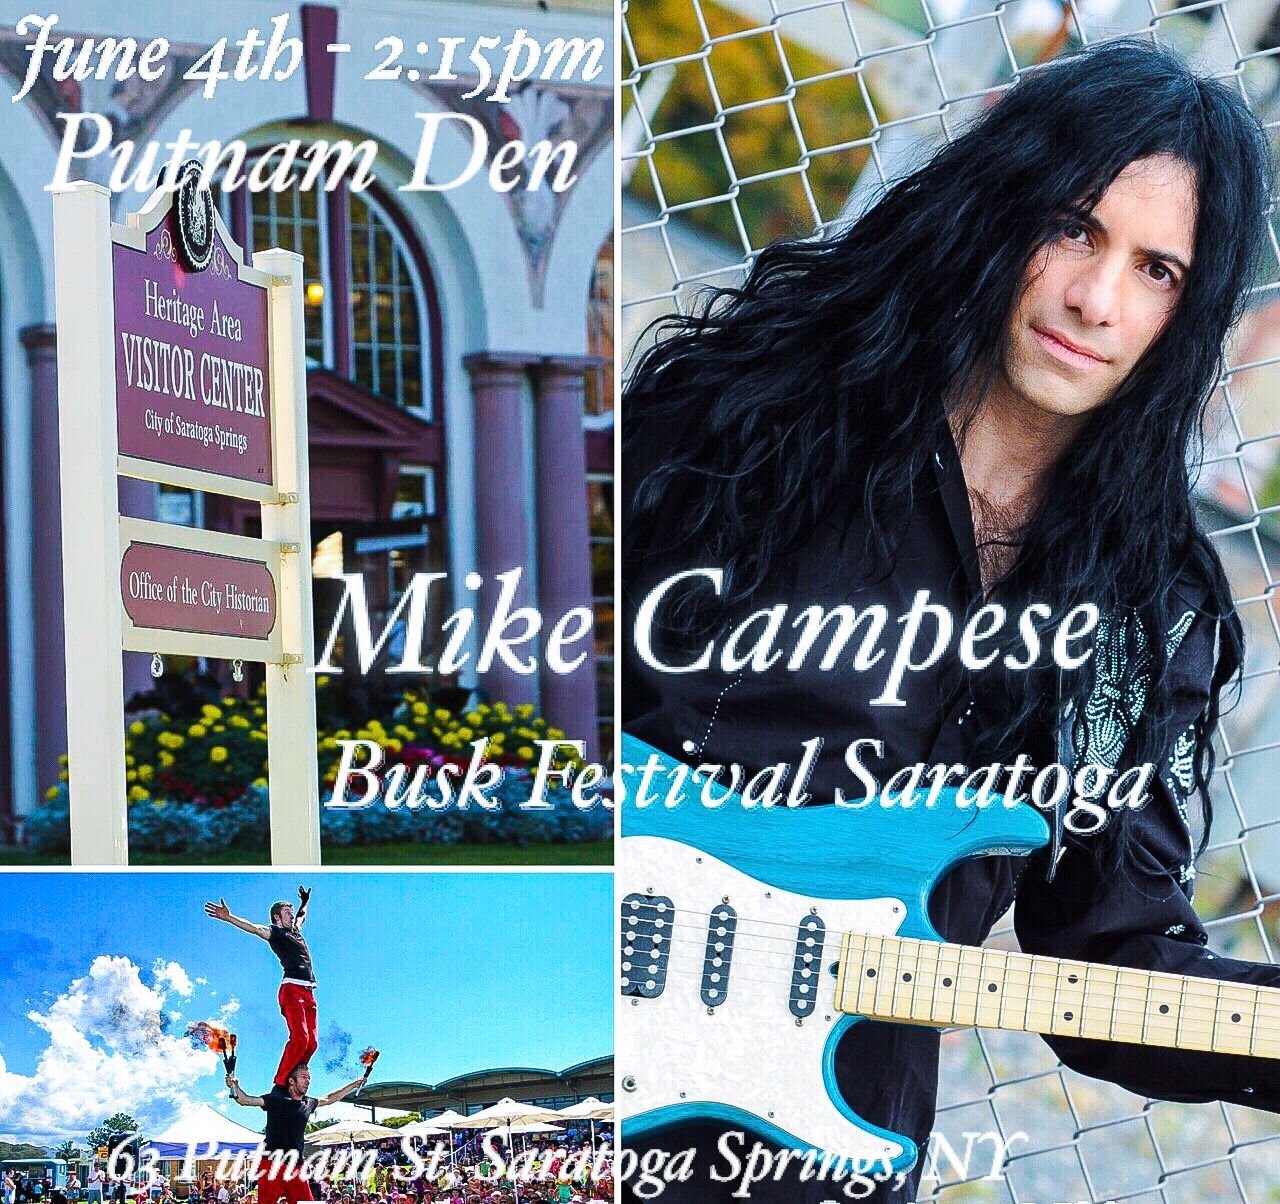 Mike Campese, Busk Festival Saratoga Springs, NY - Putnam Den.